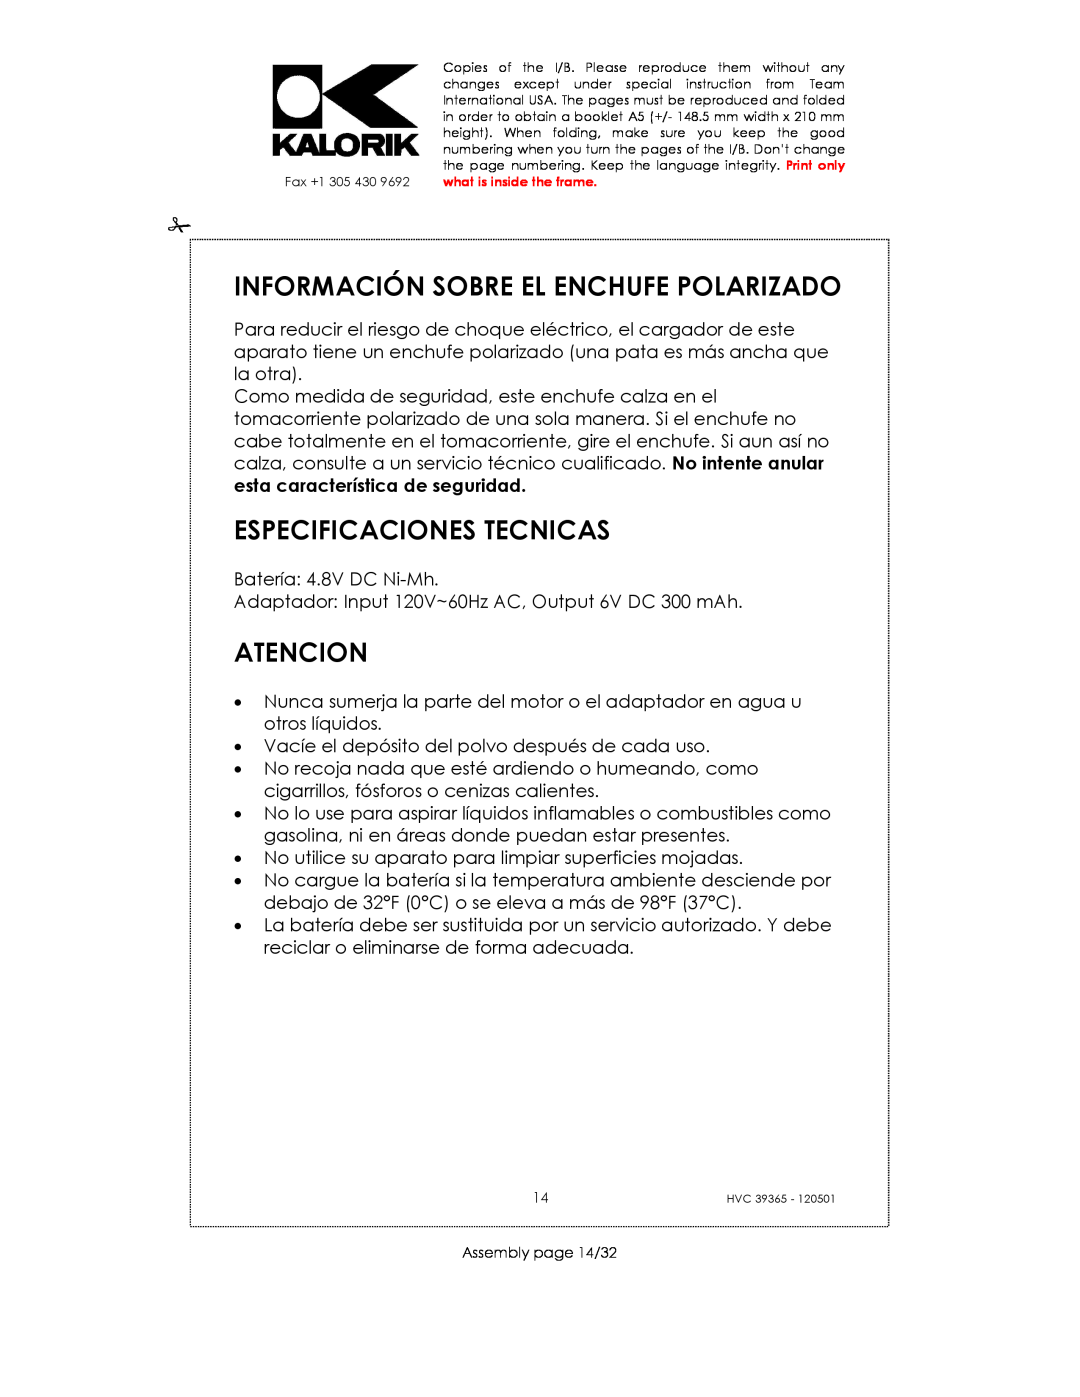 Kalorik HVC 39365 manual Información Sobre El Enchufe Polarizado, Especificaciones Tecnicas, Atencion 